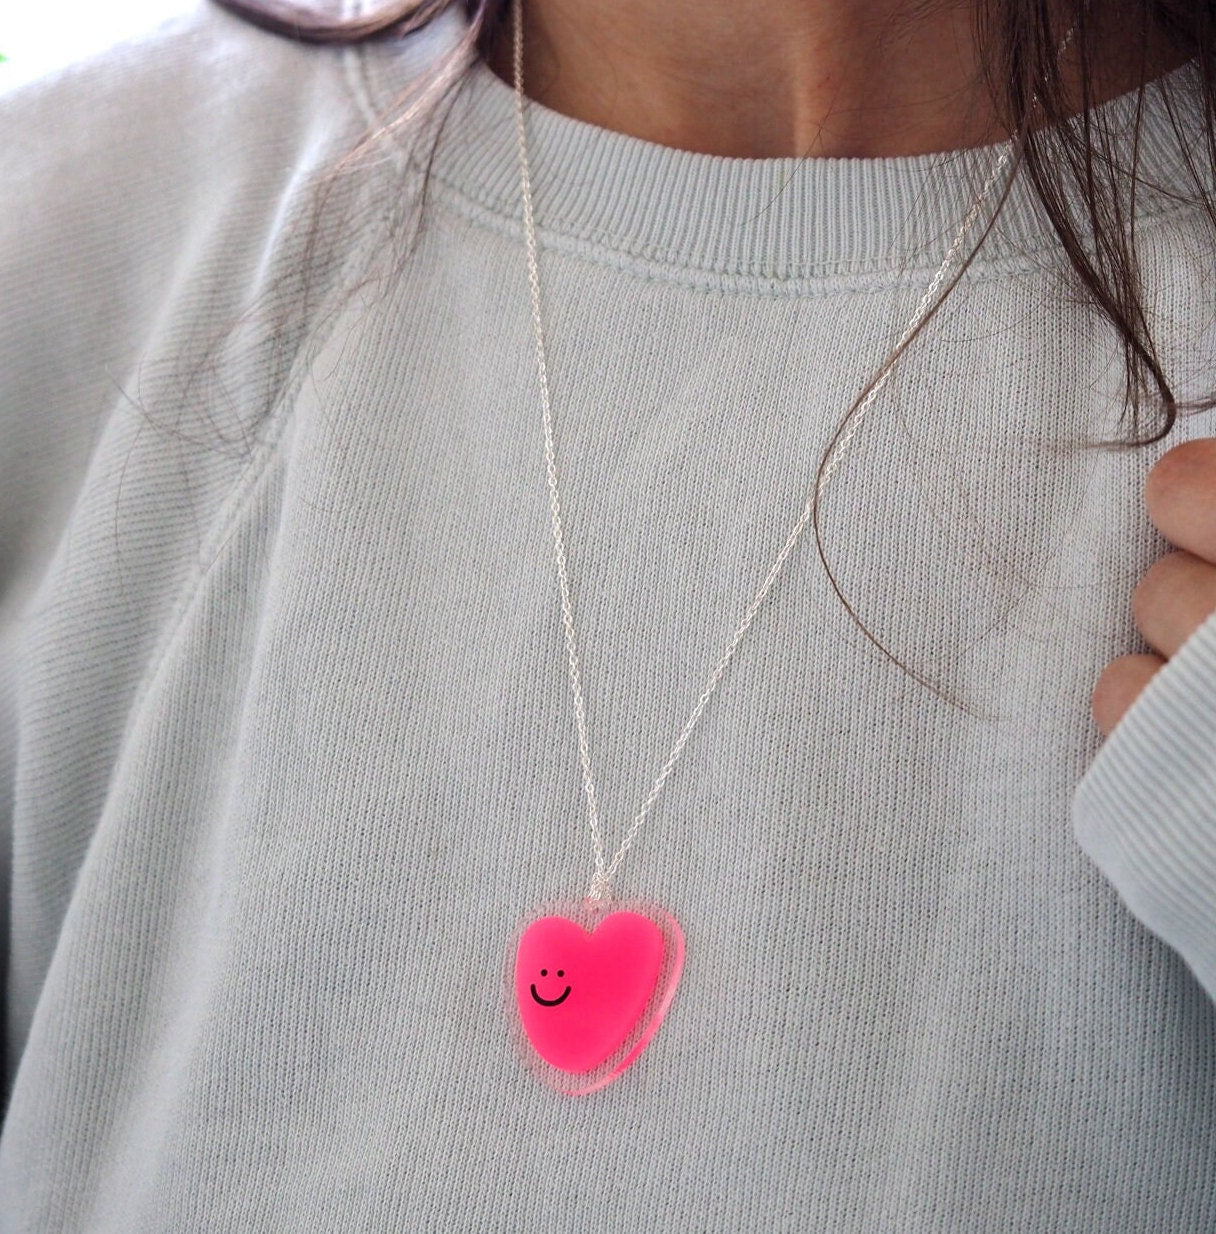 Happy Heart Pendant - Pink Acrylic